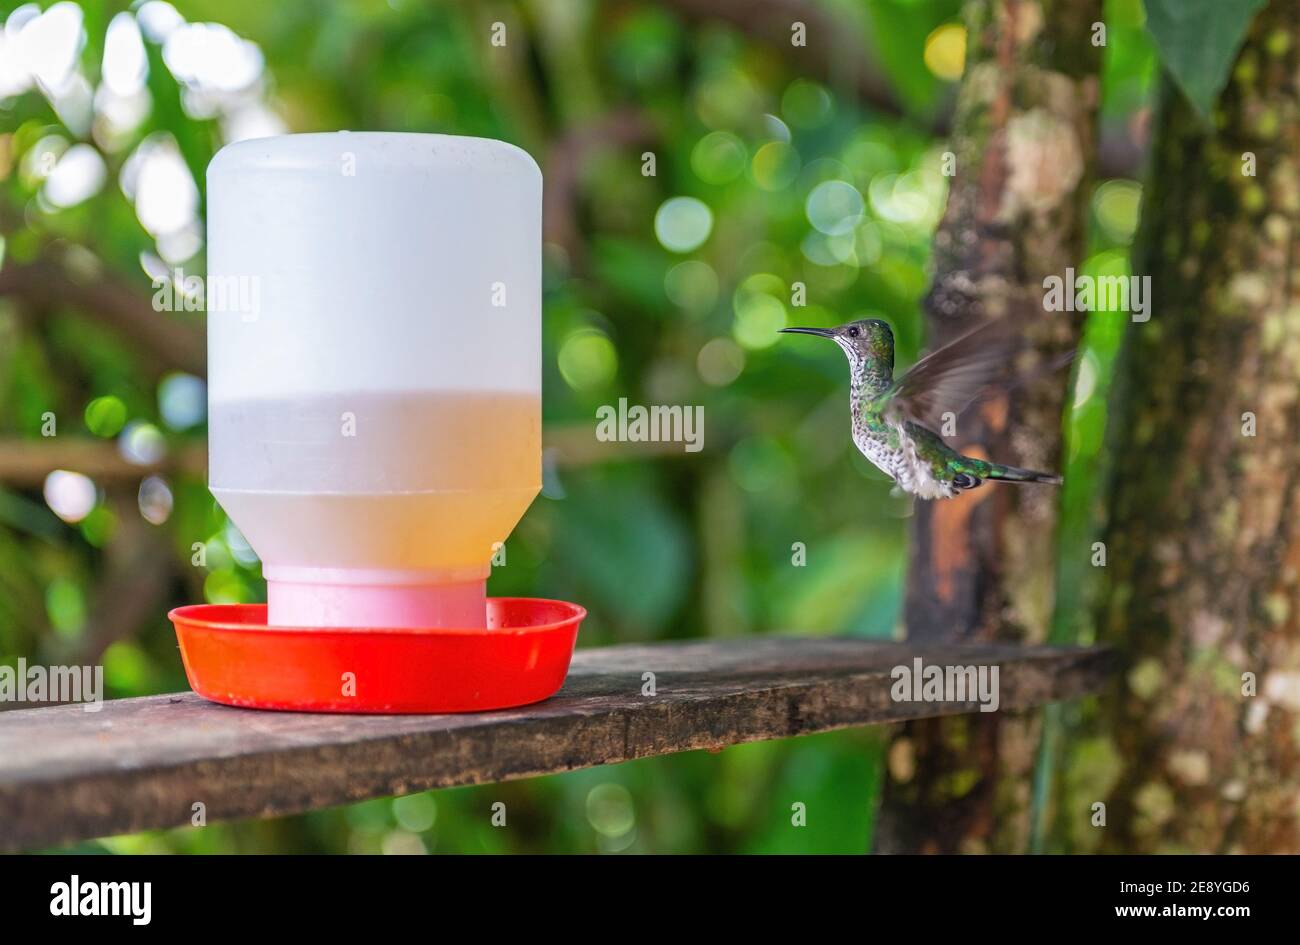 Smeraldo andino (Amazzilia franciae) presso la bevatrice di colibrì, Mindo, Ecuador. Focus su colibrì. Foto Stock